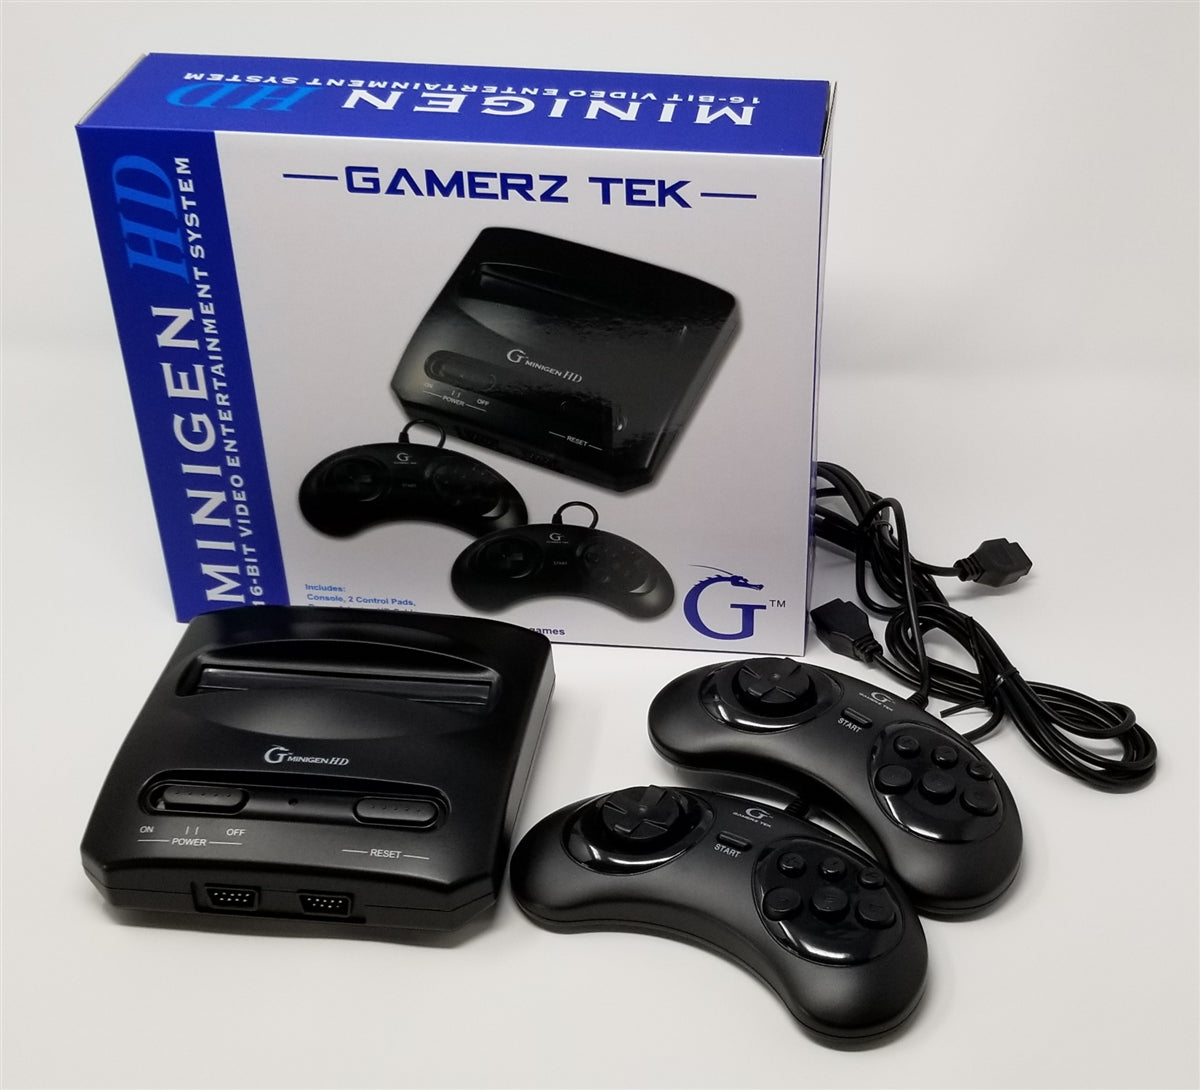 Minigen HD (Sega Genesis)